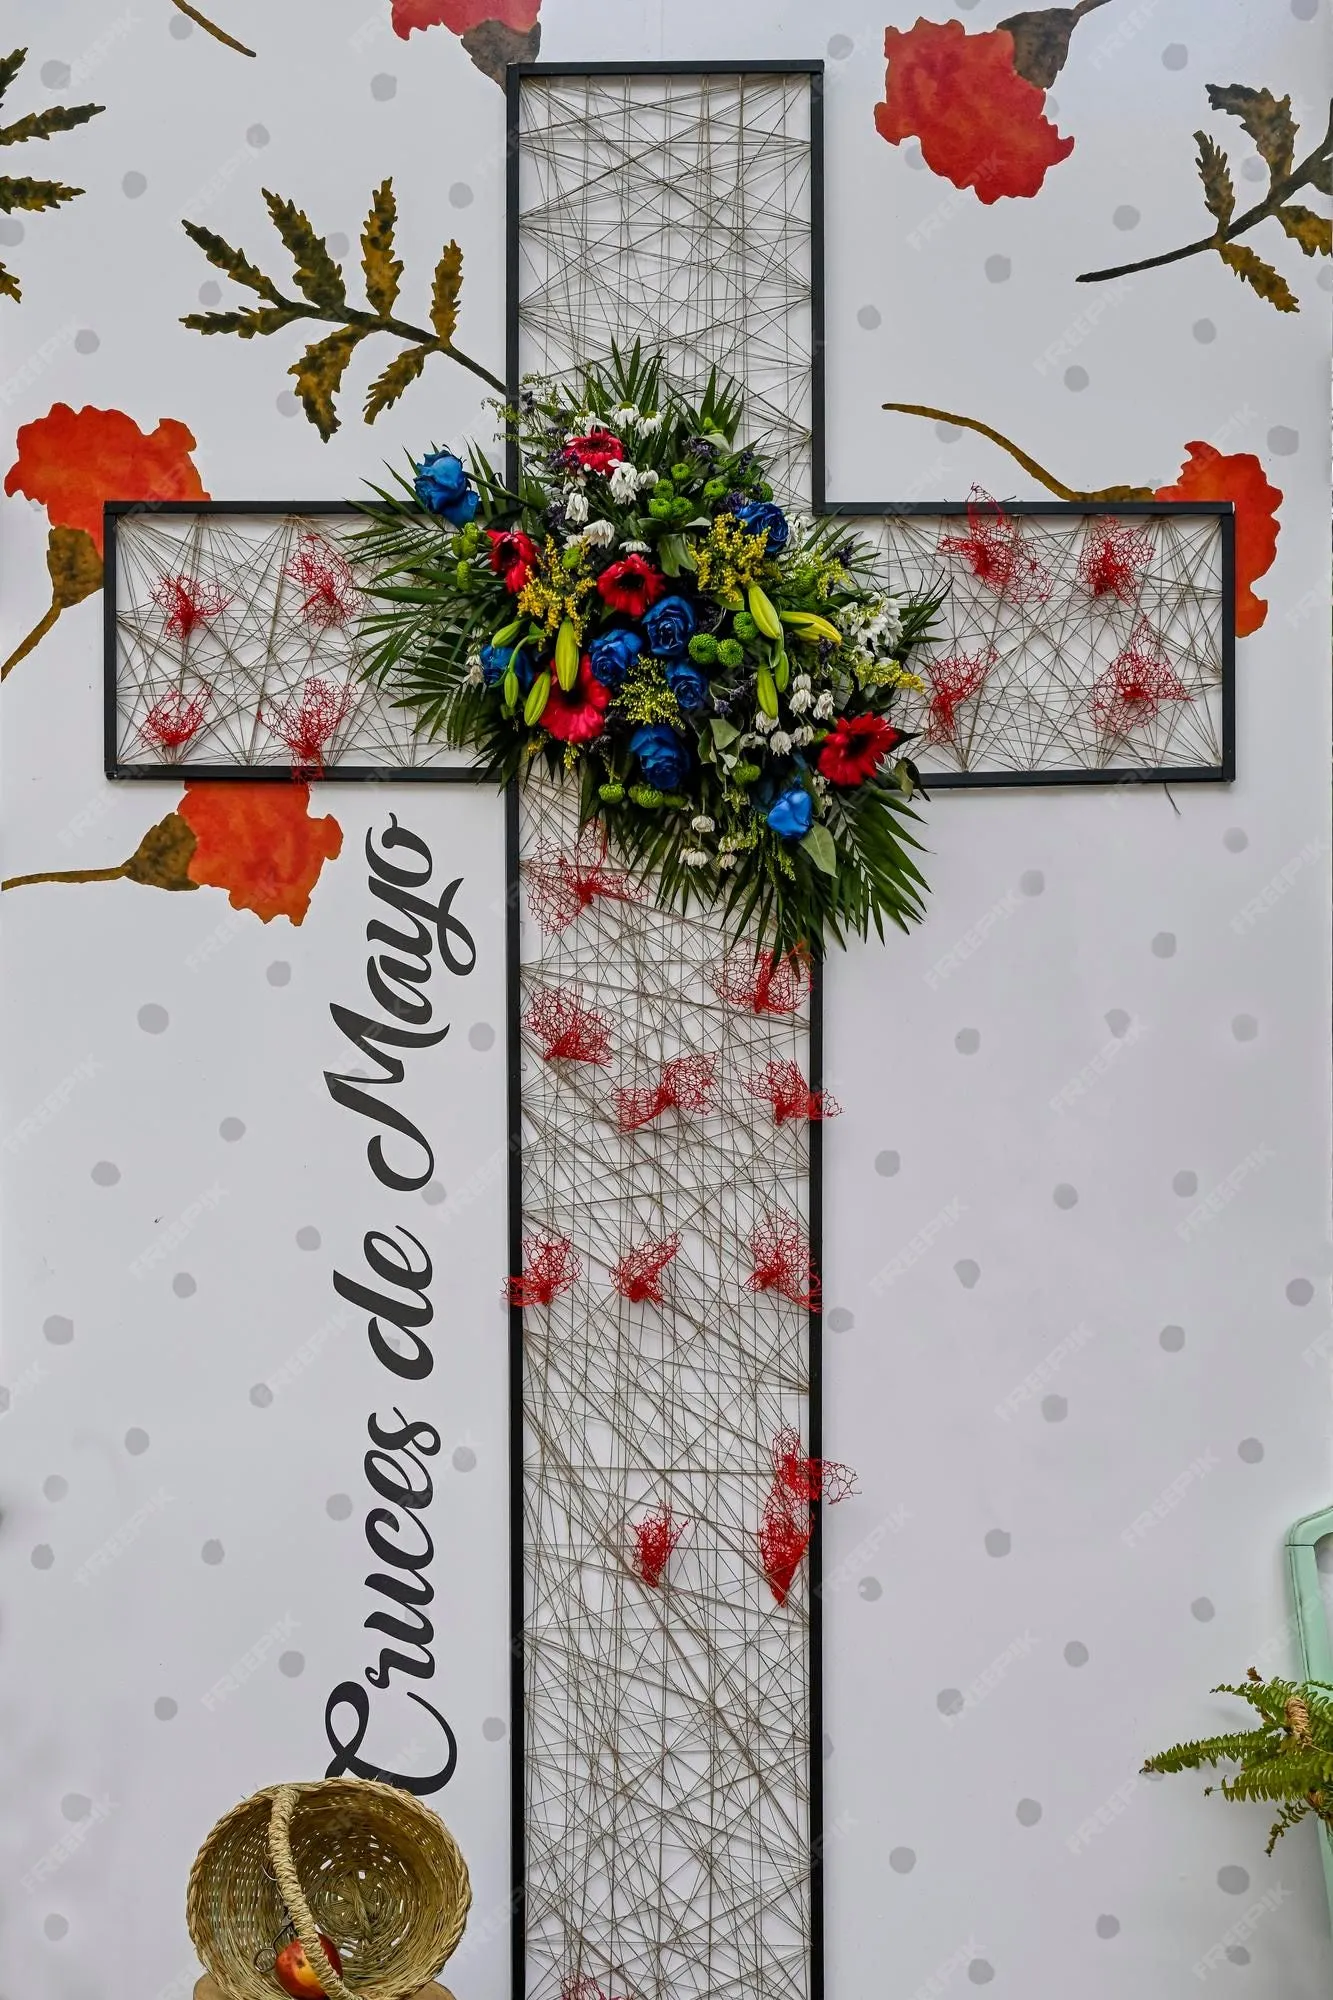 Cruz de mayo la fiesta de las cruces es una festividad que se celebra el 3 de  mayo | Foto Premium